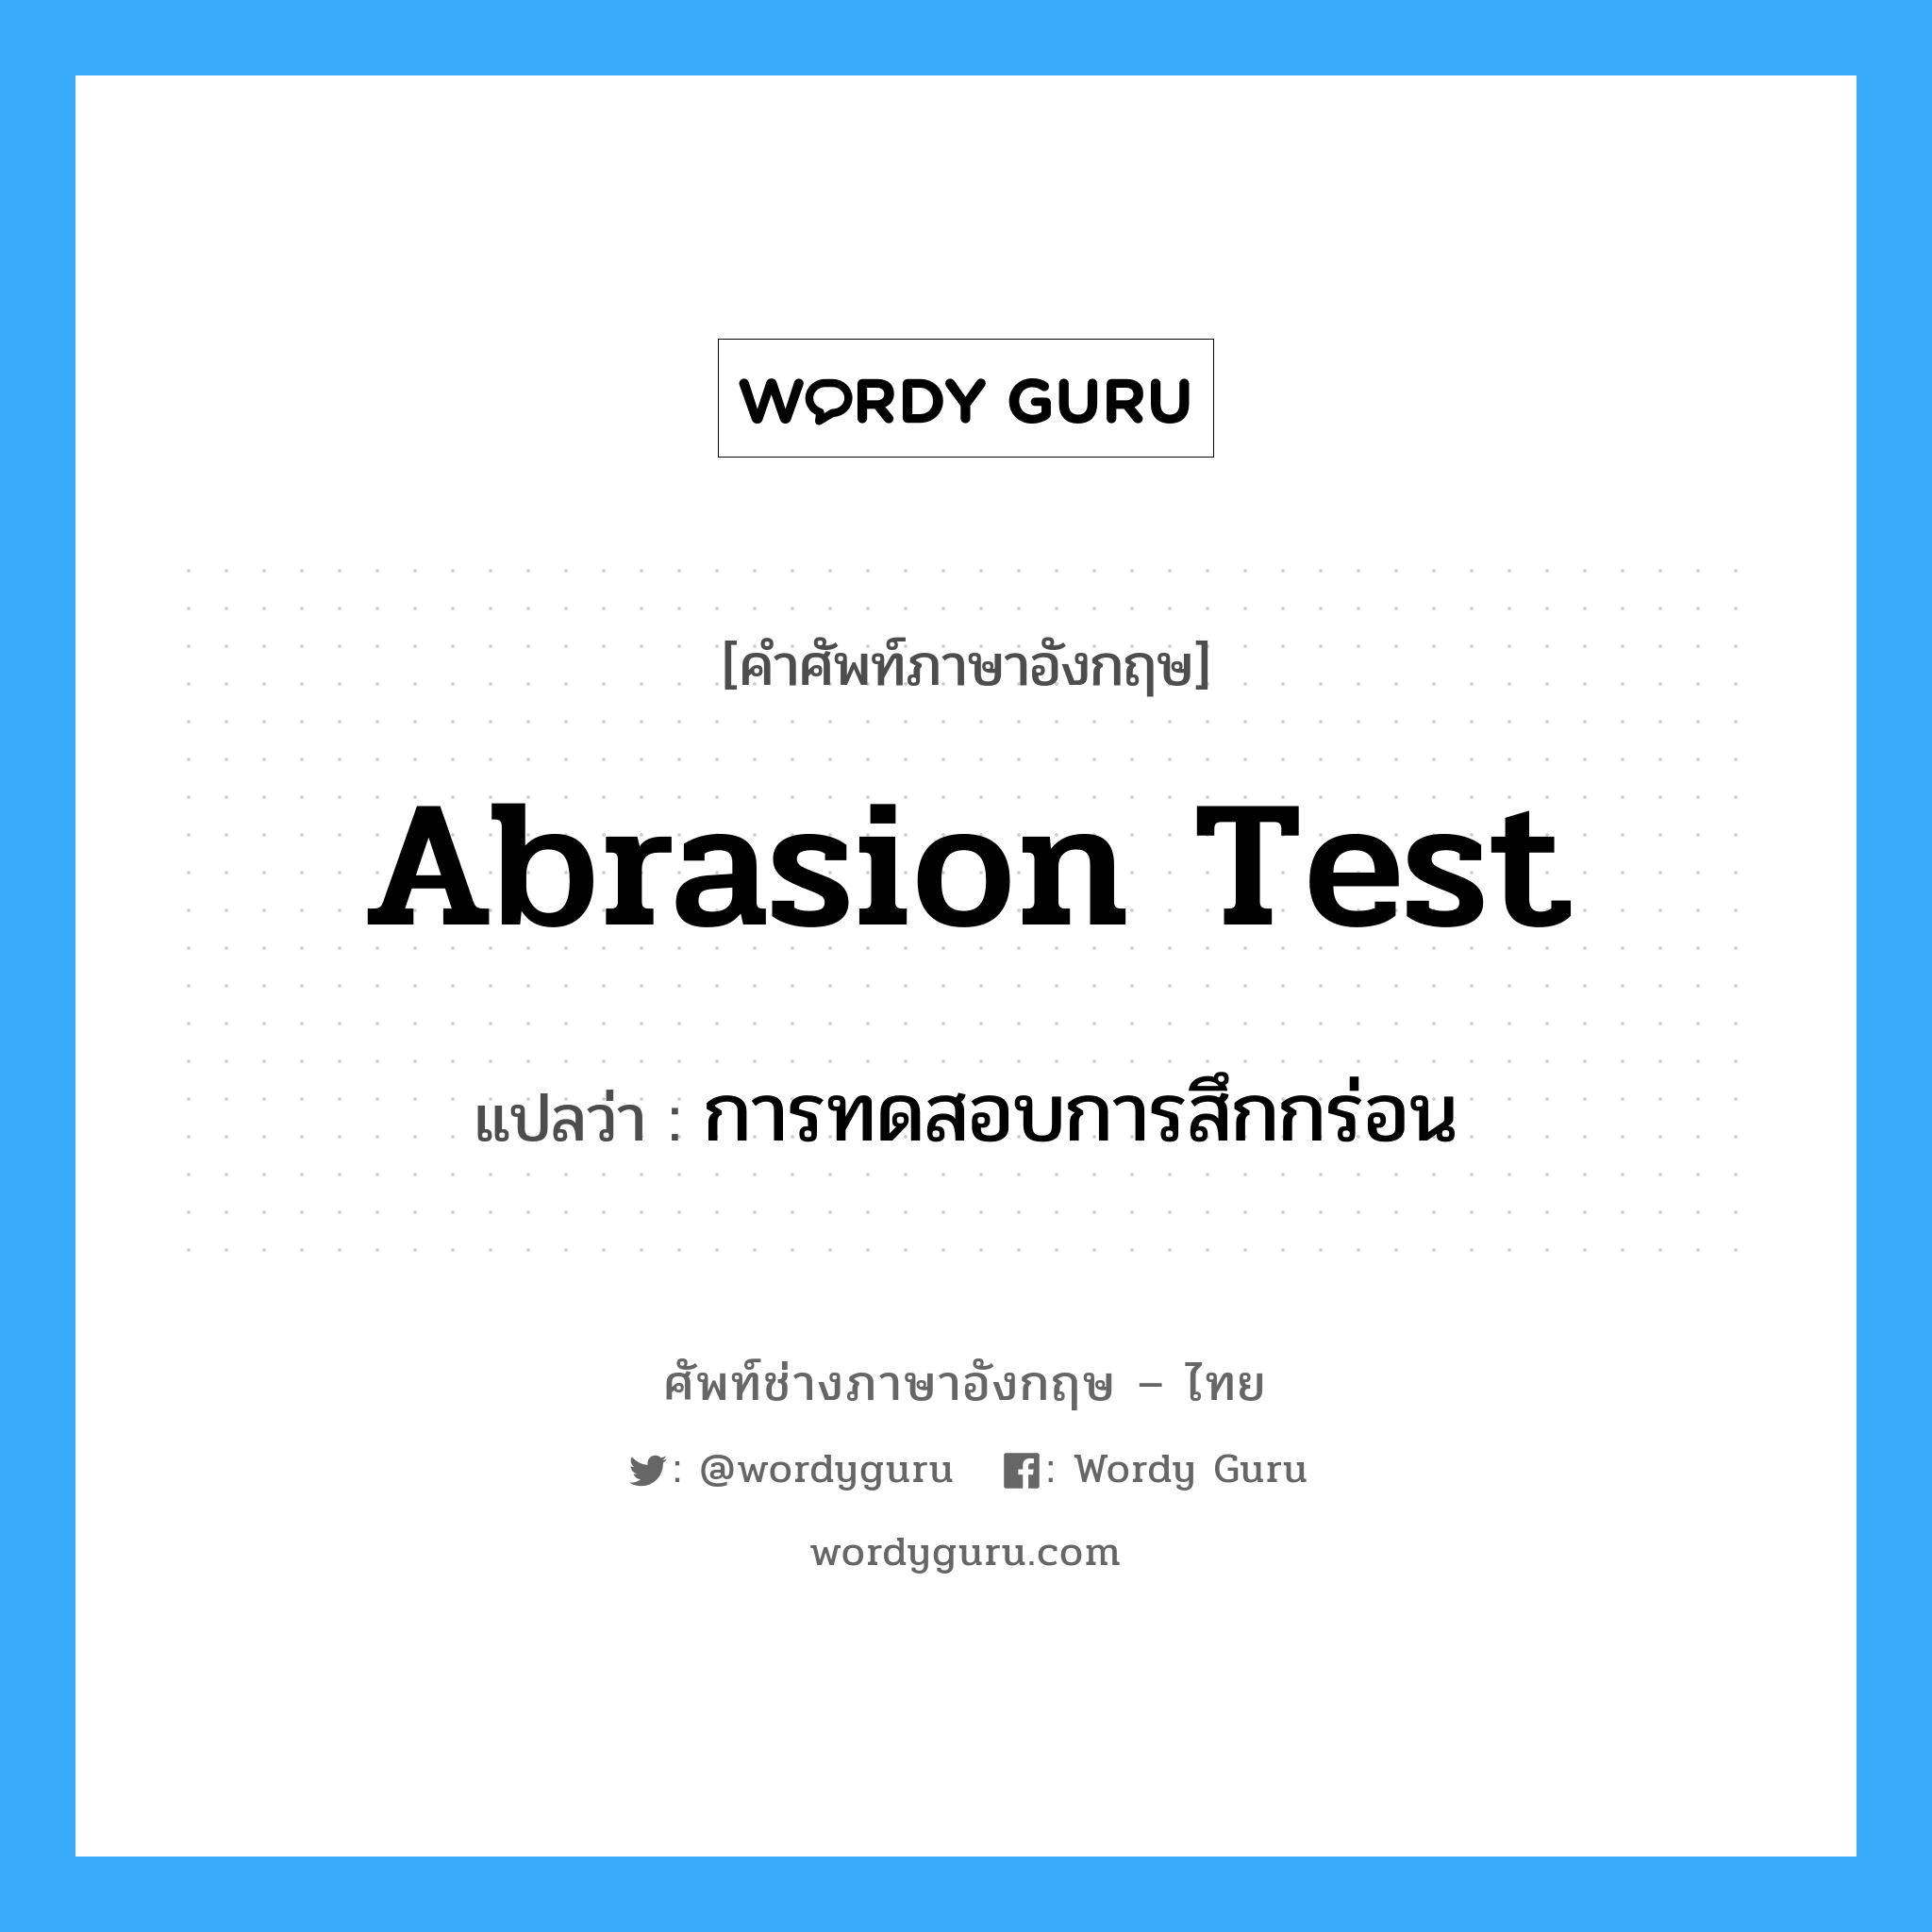 การทดสอบการสึกกร่อน ภาษาอังกฤษ?, คำศัพท์ช่างภาษาอังกฤษ - ไทย การทดสอบการสึกกร่อน คำศัพท์ภาษาอังกฤษ การทดสอบการสึกกร่อน แปลว่า abrasion test